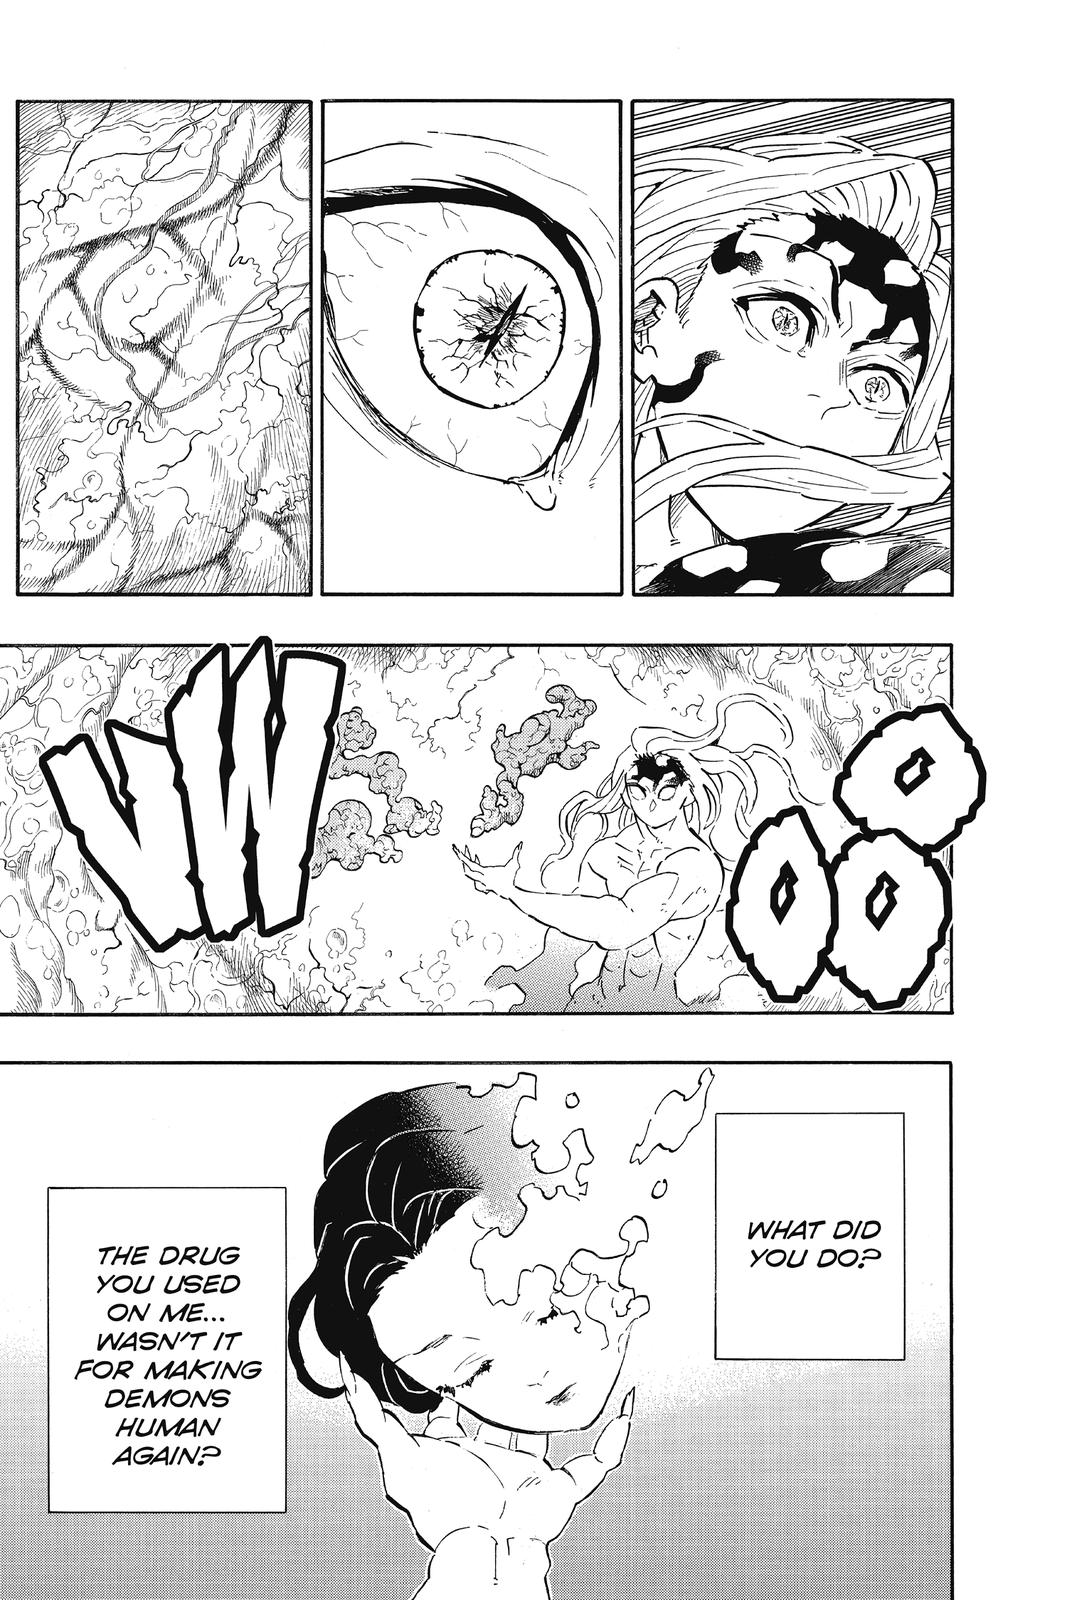 Demon Slayer Manga Manga Chapter - 193 - image 11